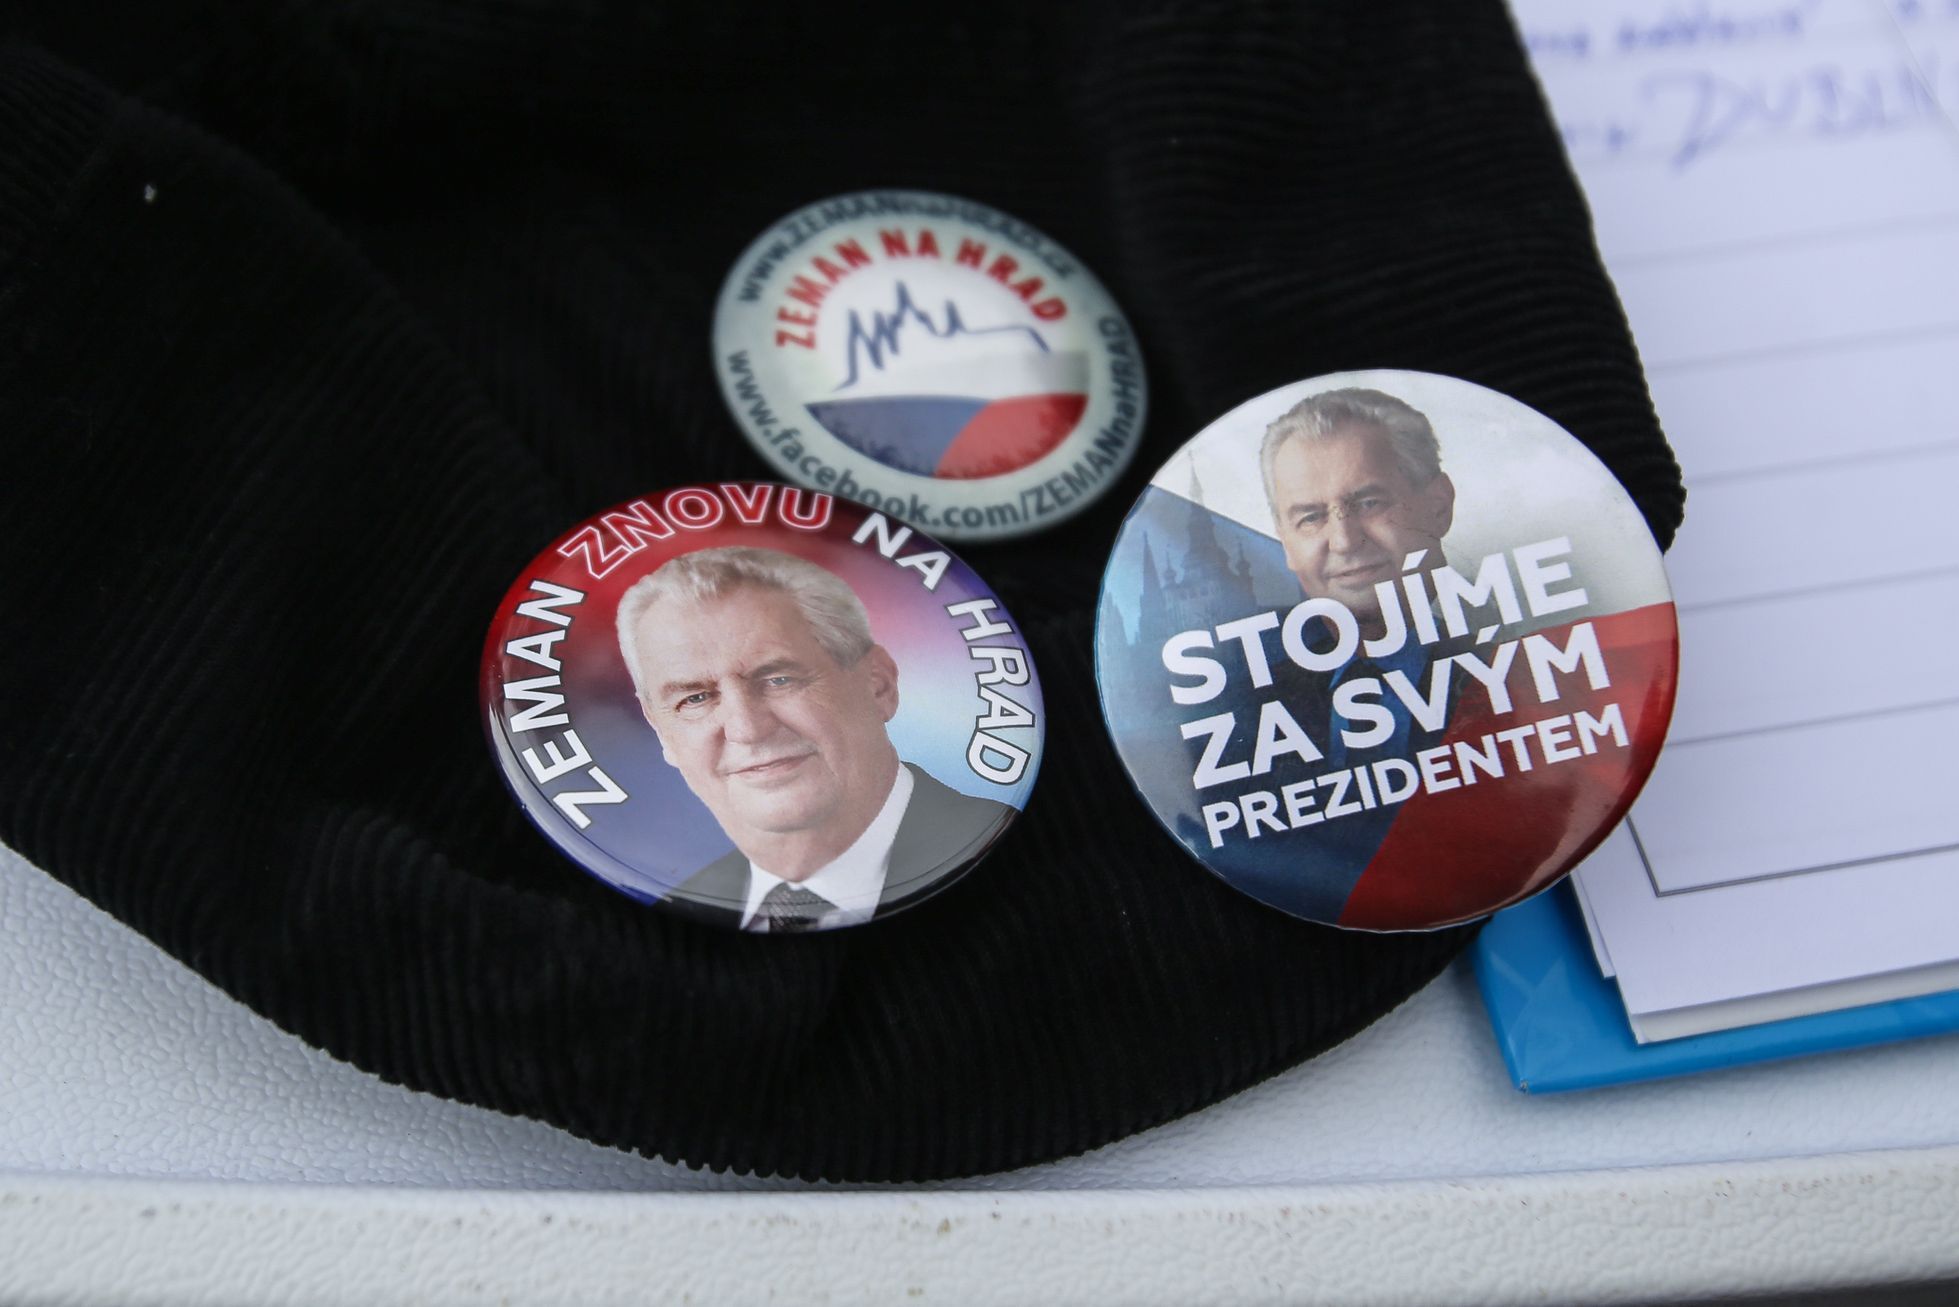 Miloš Zeman oznámil kandidaturu na prezidenta - jeho TK, aktivisté před Hradem